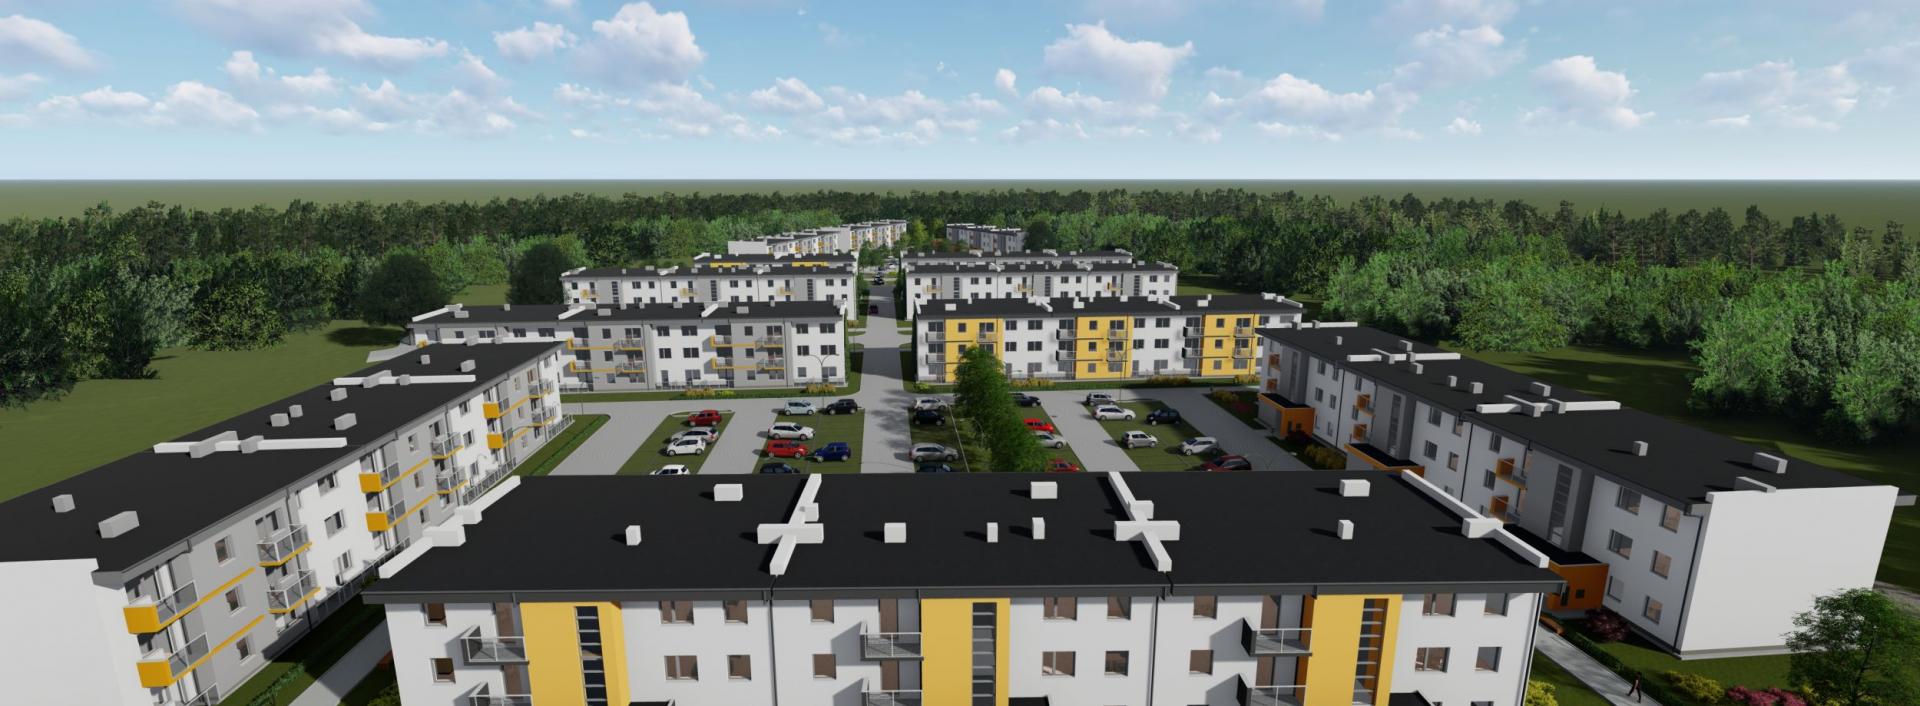 Podpisaliśmy umowę z firmą, która wybuduje osiedle Leśnica IX